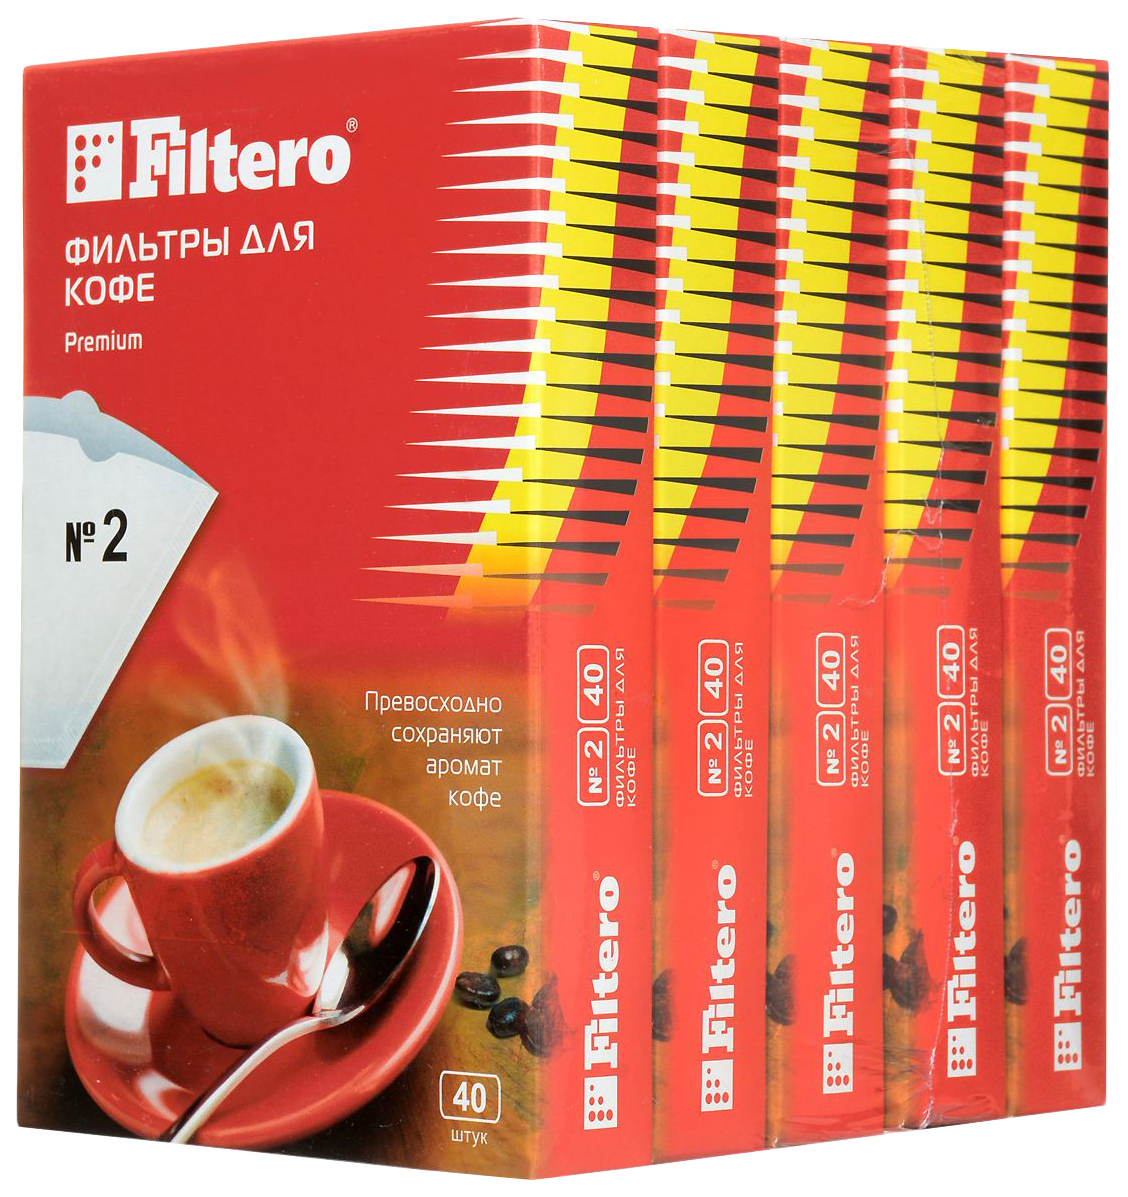 Фильтр Filtero Premium №2 фильтры для кофеварок filtero